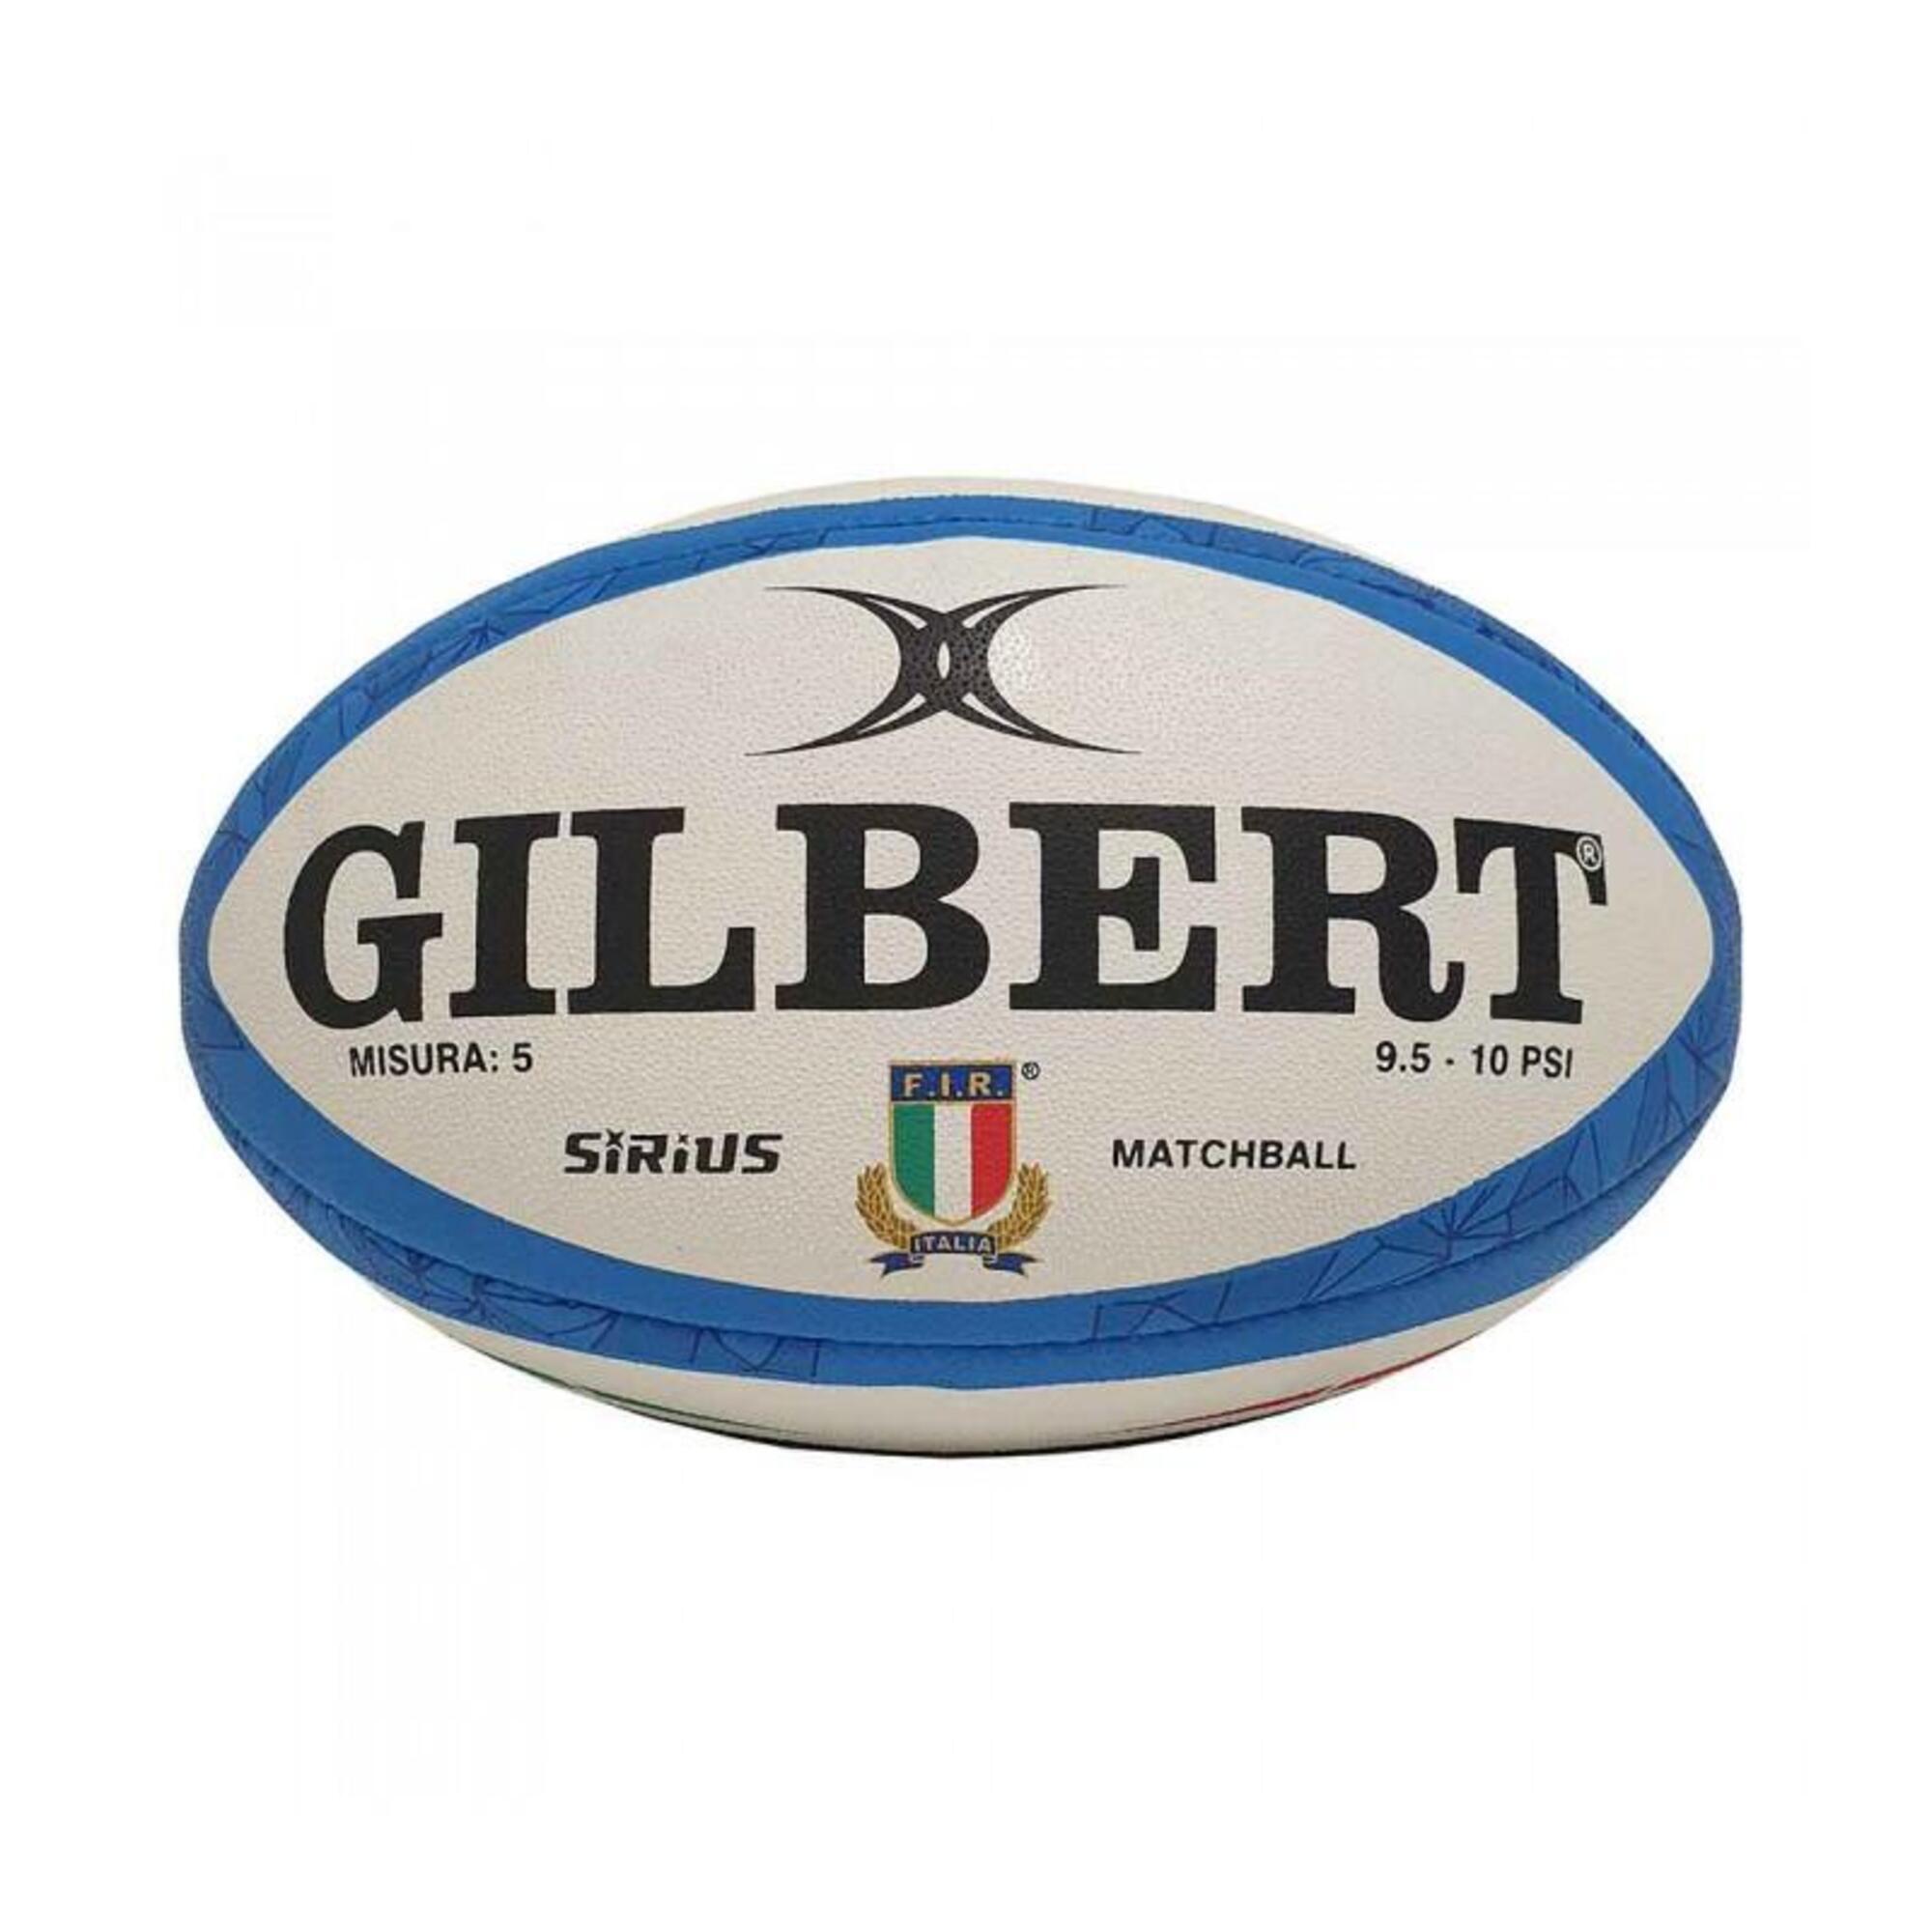 GILBERT Italy Sirius Match Ball, White